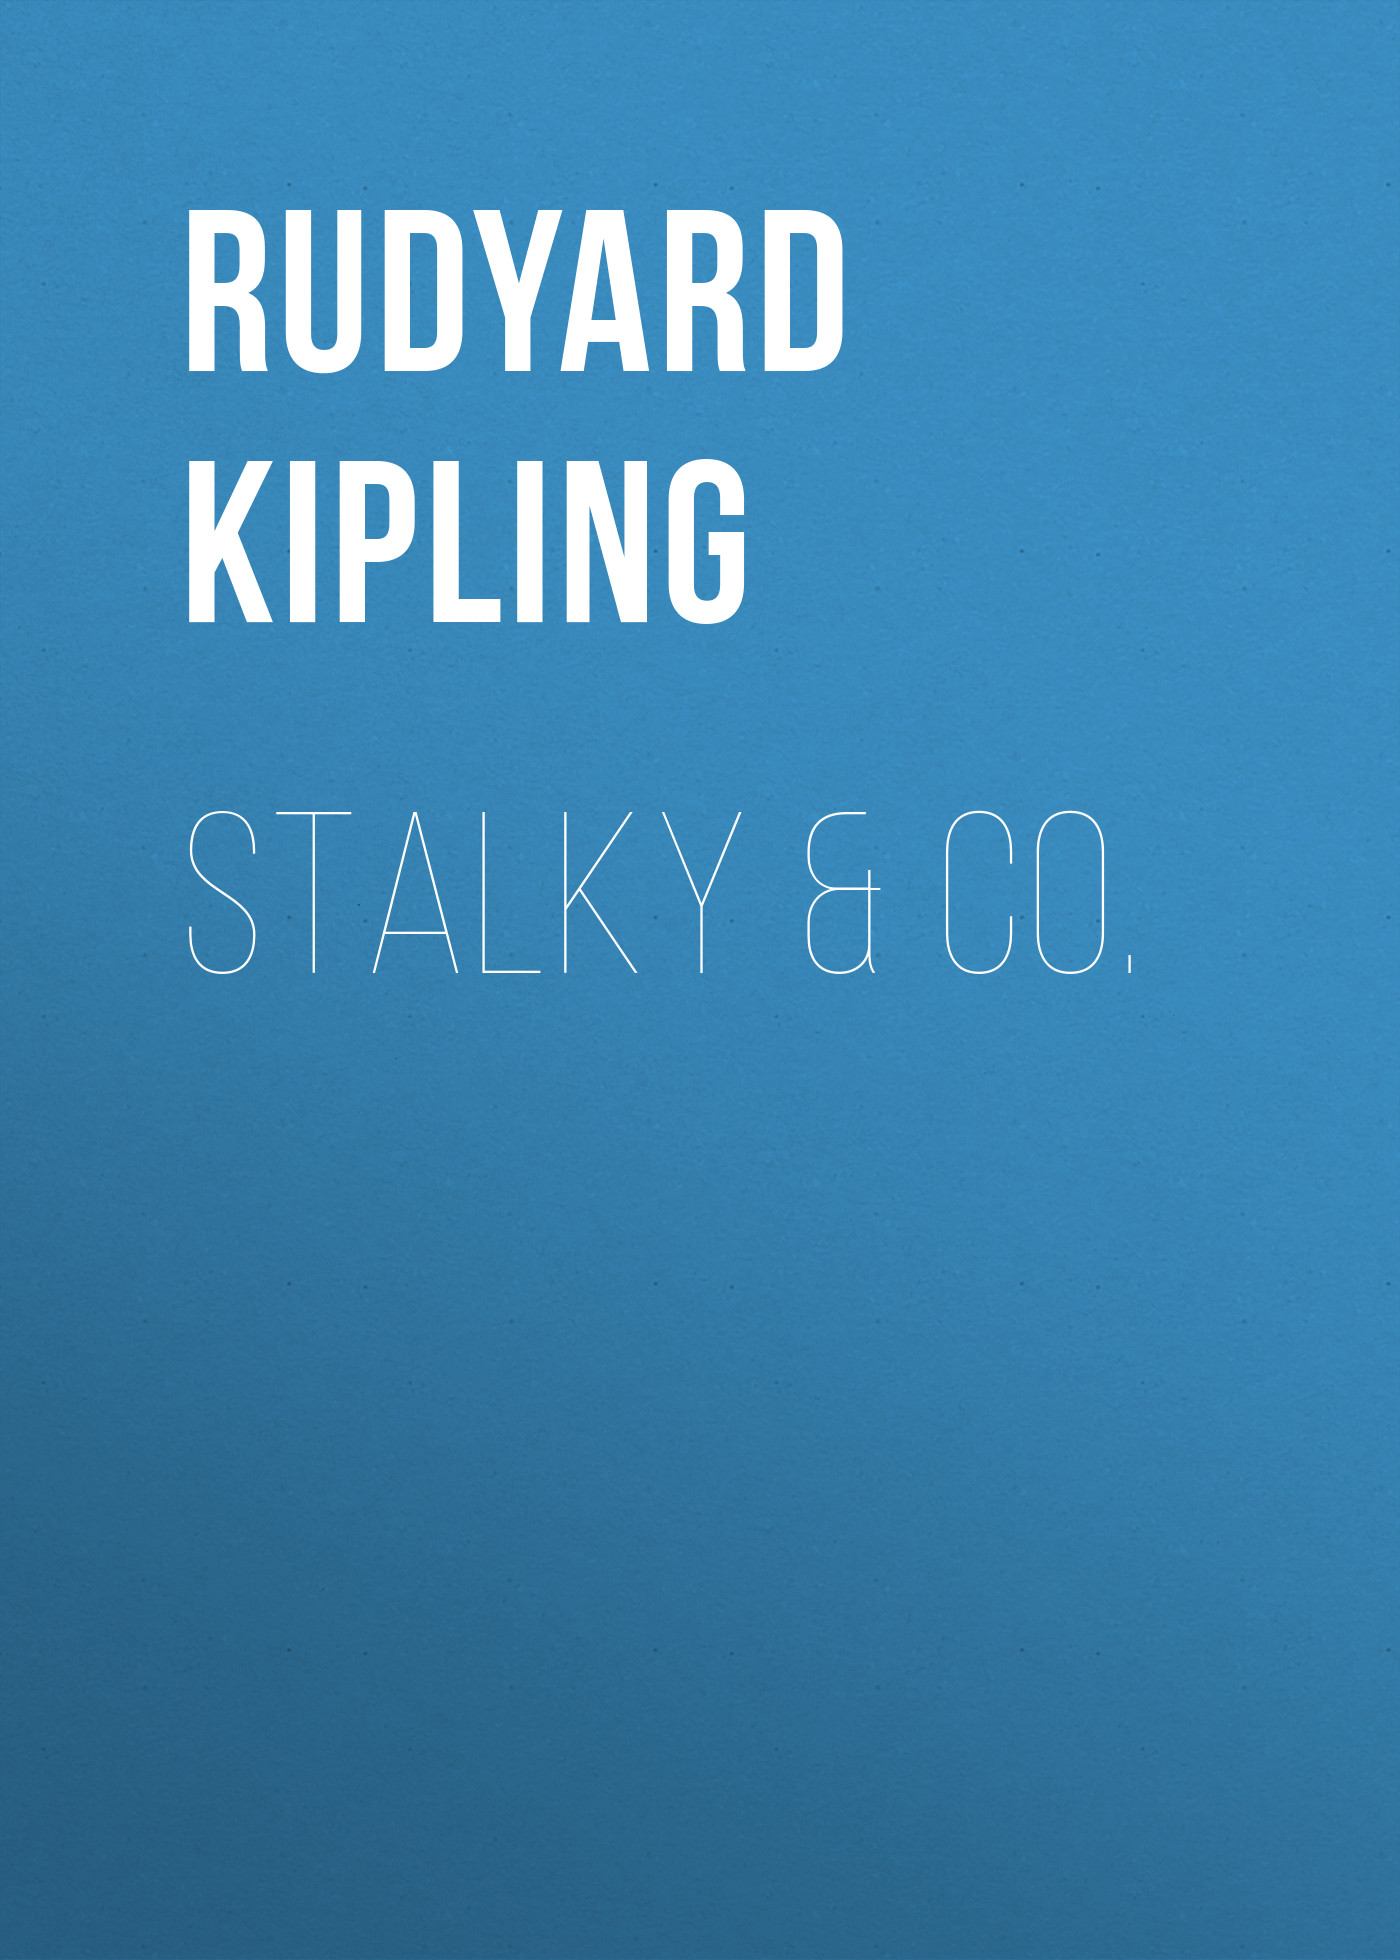 Книга Stalky & Co. из серии , созданная Rudyard Kipling, может относится к жанру Литература 19 века, Зарубежная старинная литература, Зарубежная классика, Детская проза. Стоимость электронной книги Stalky & Co. с идентификатором 25229860 составляет 0 руб.